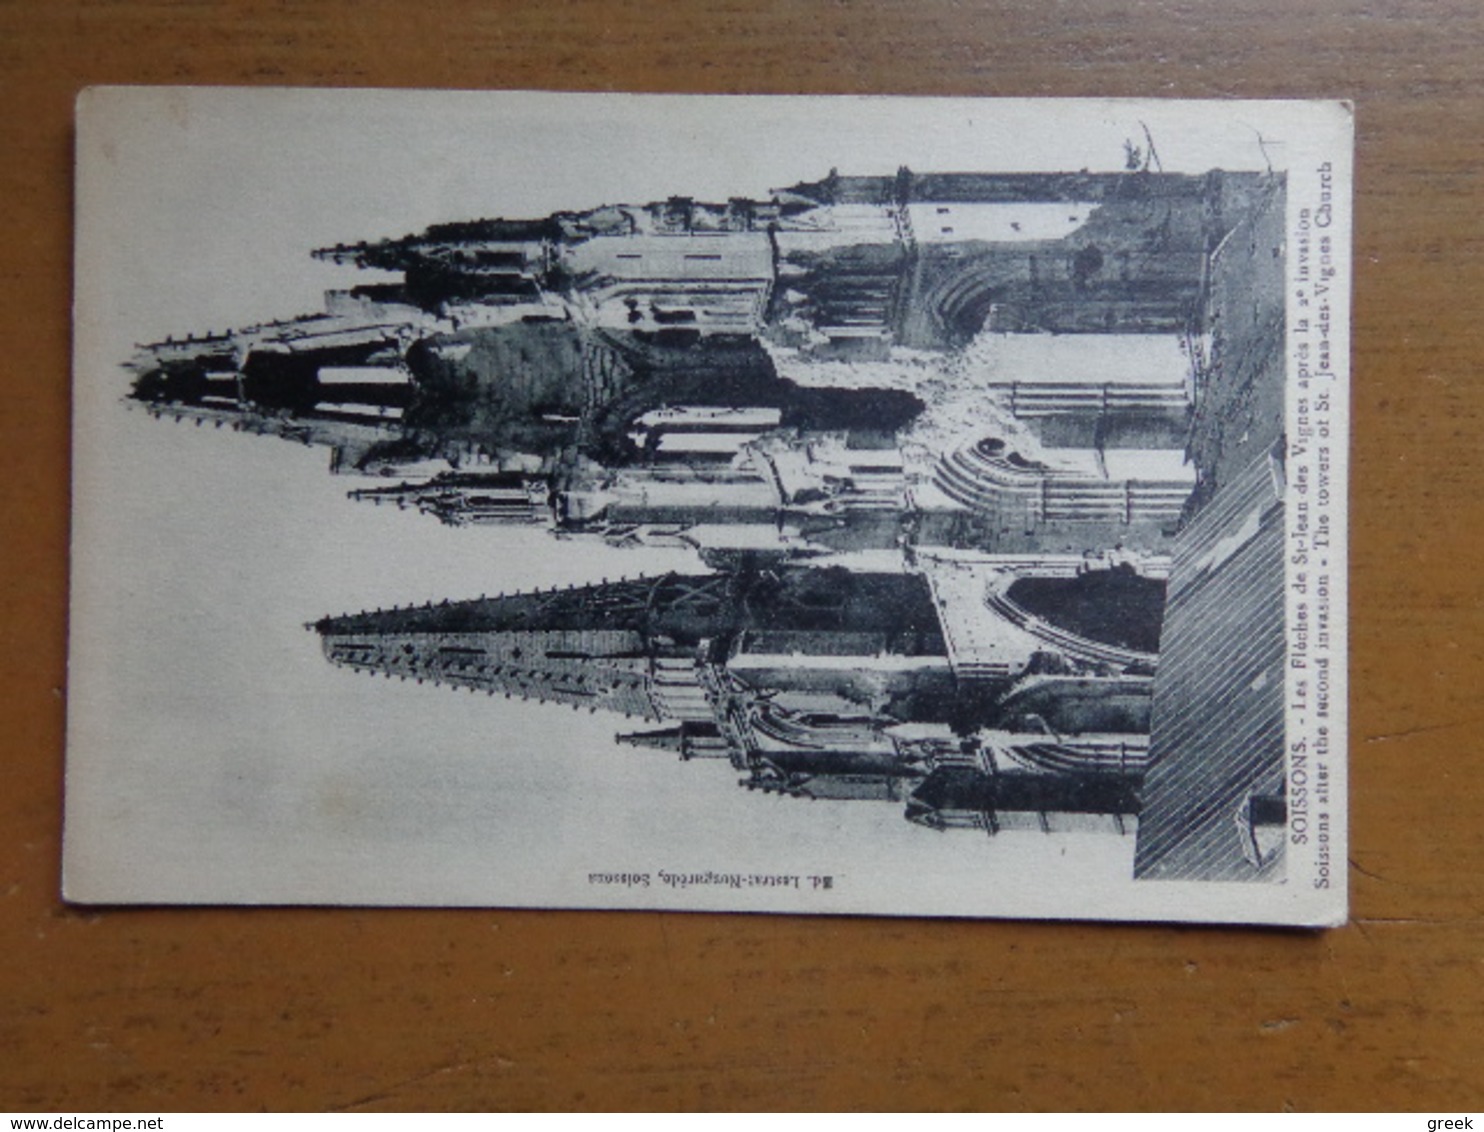 Doos postkaarten (3kg900) Allerlei landen en thema's (gekleurd als zwart wit) zie enkele foto's